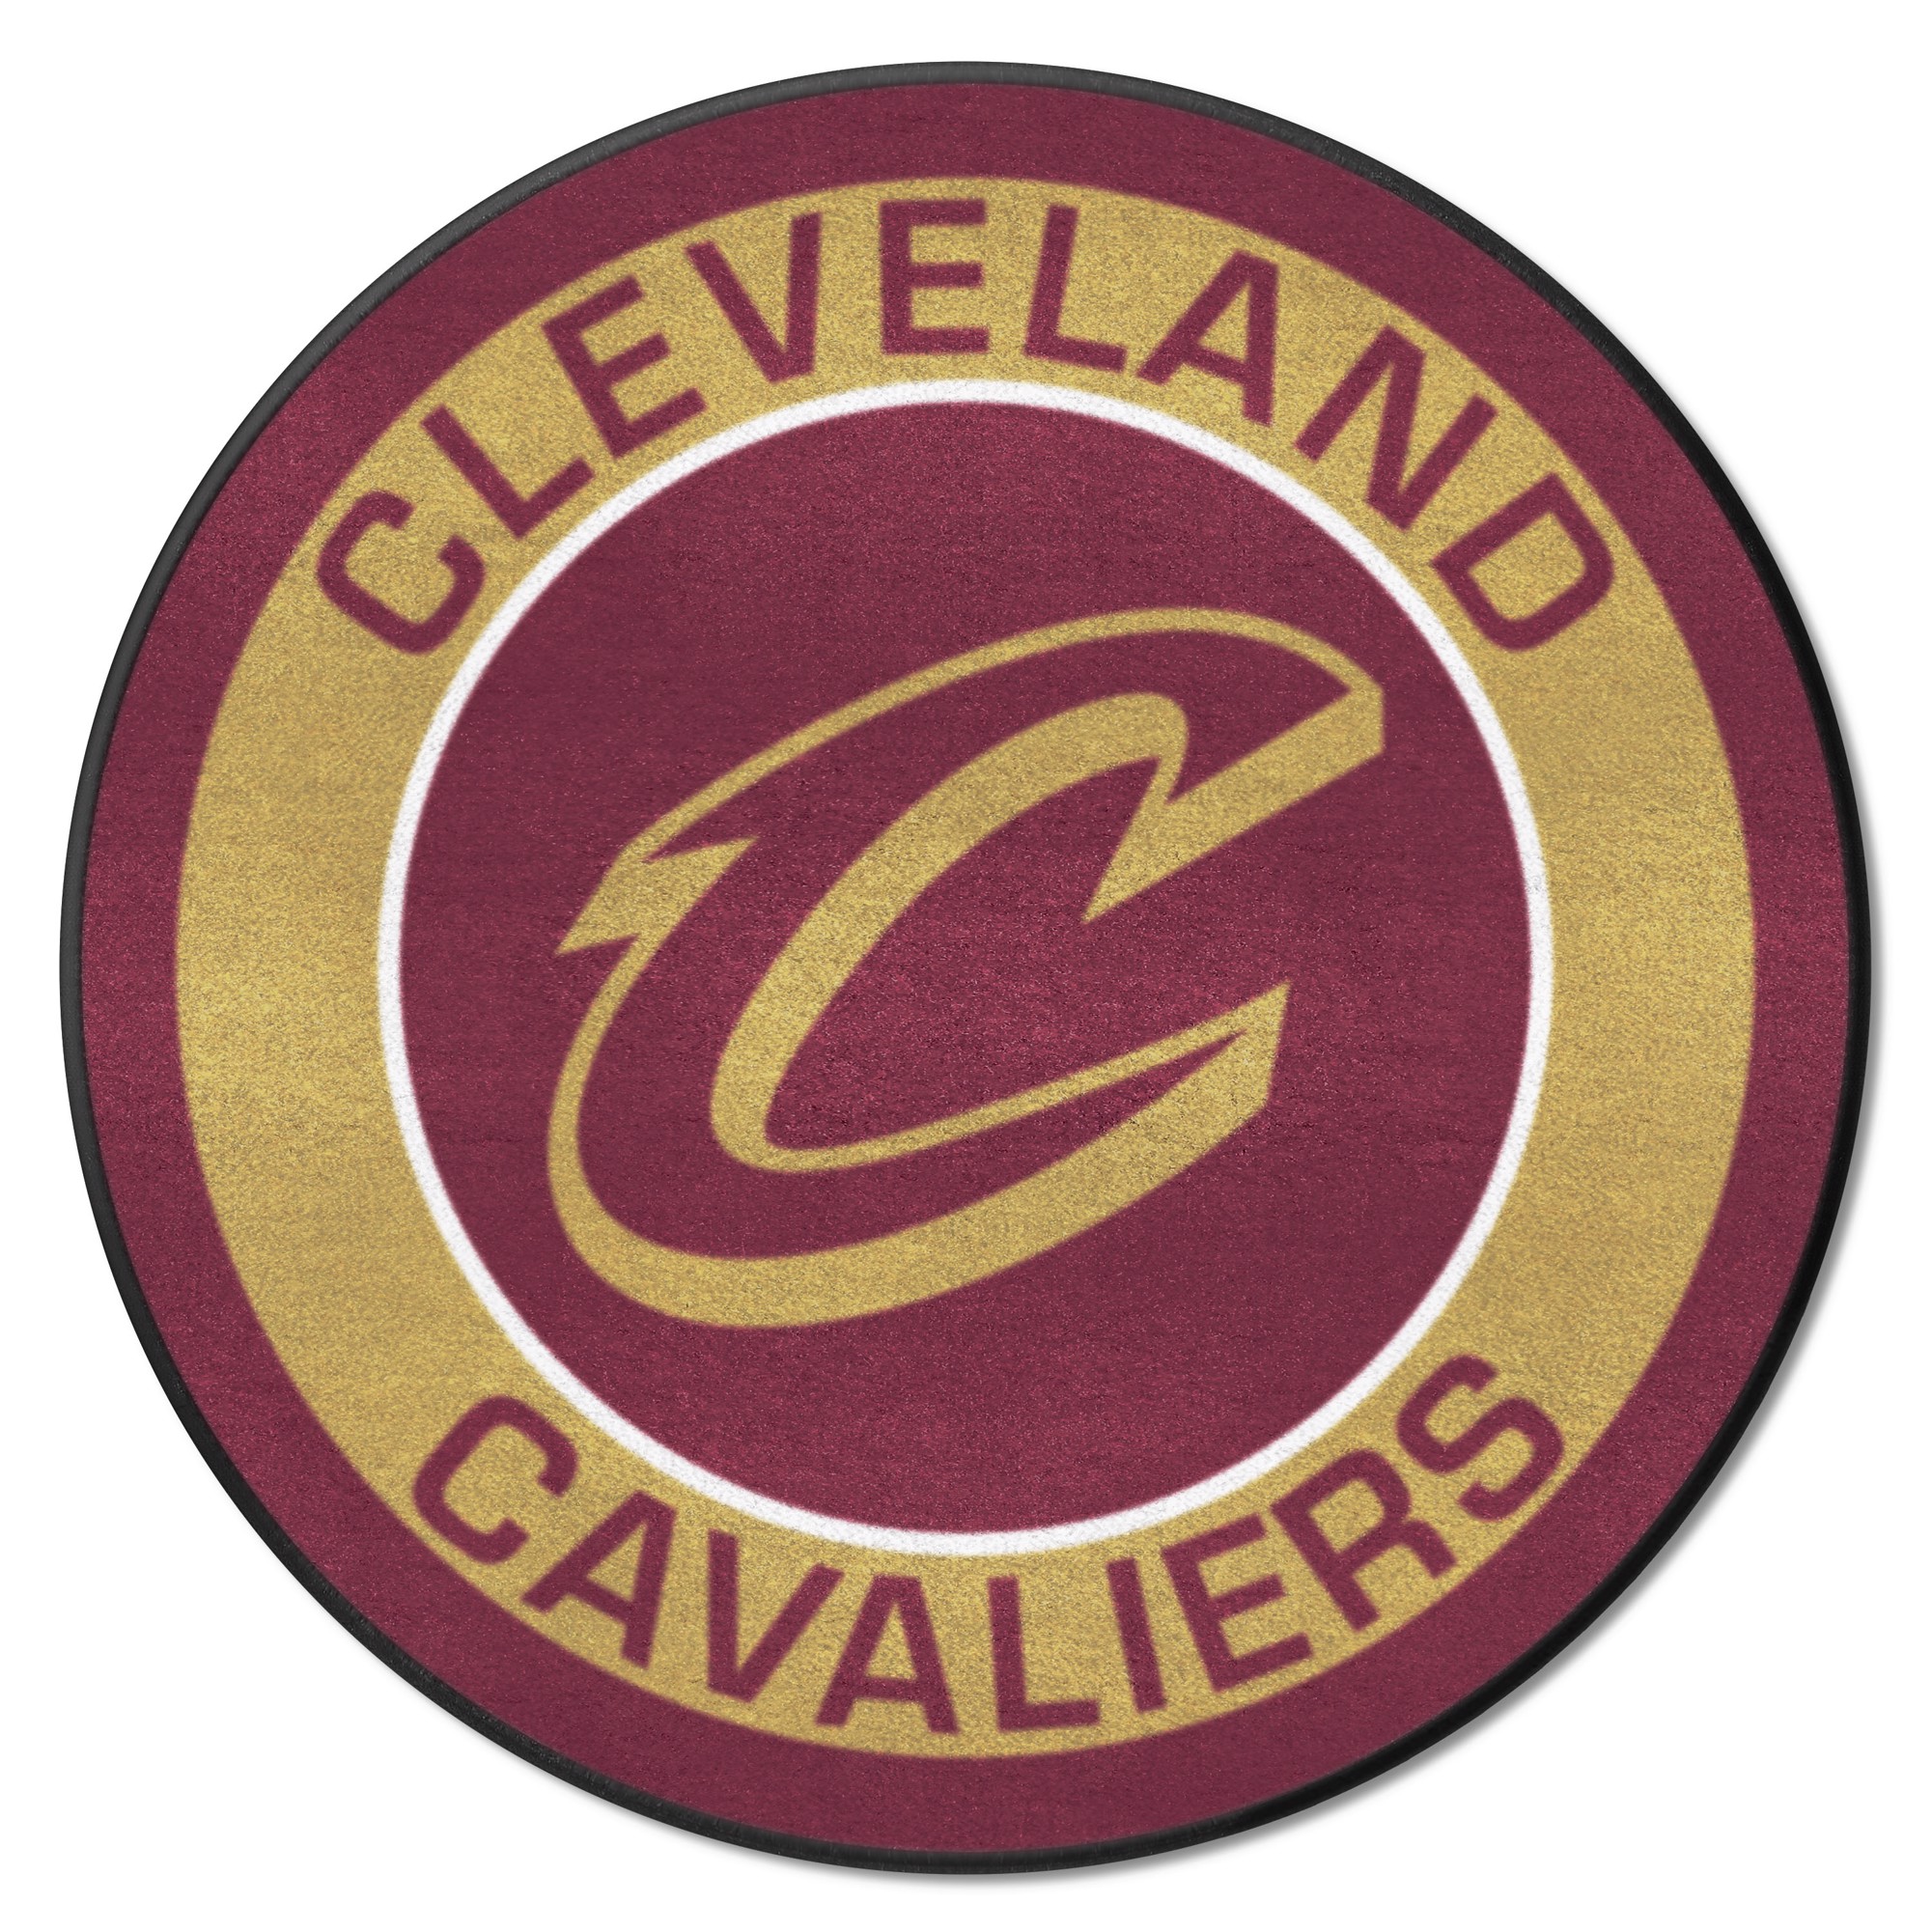 Cleveland Cavaliers Color Emblem